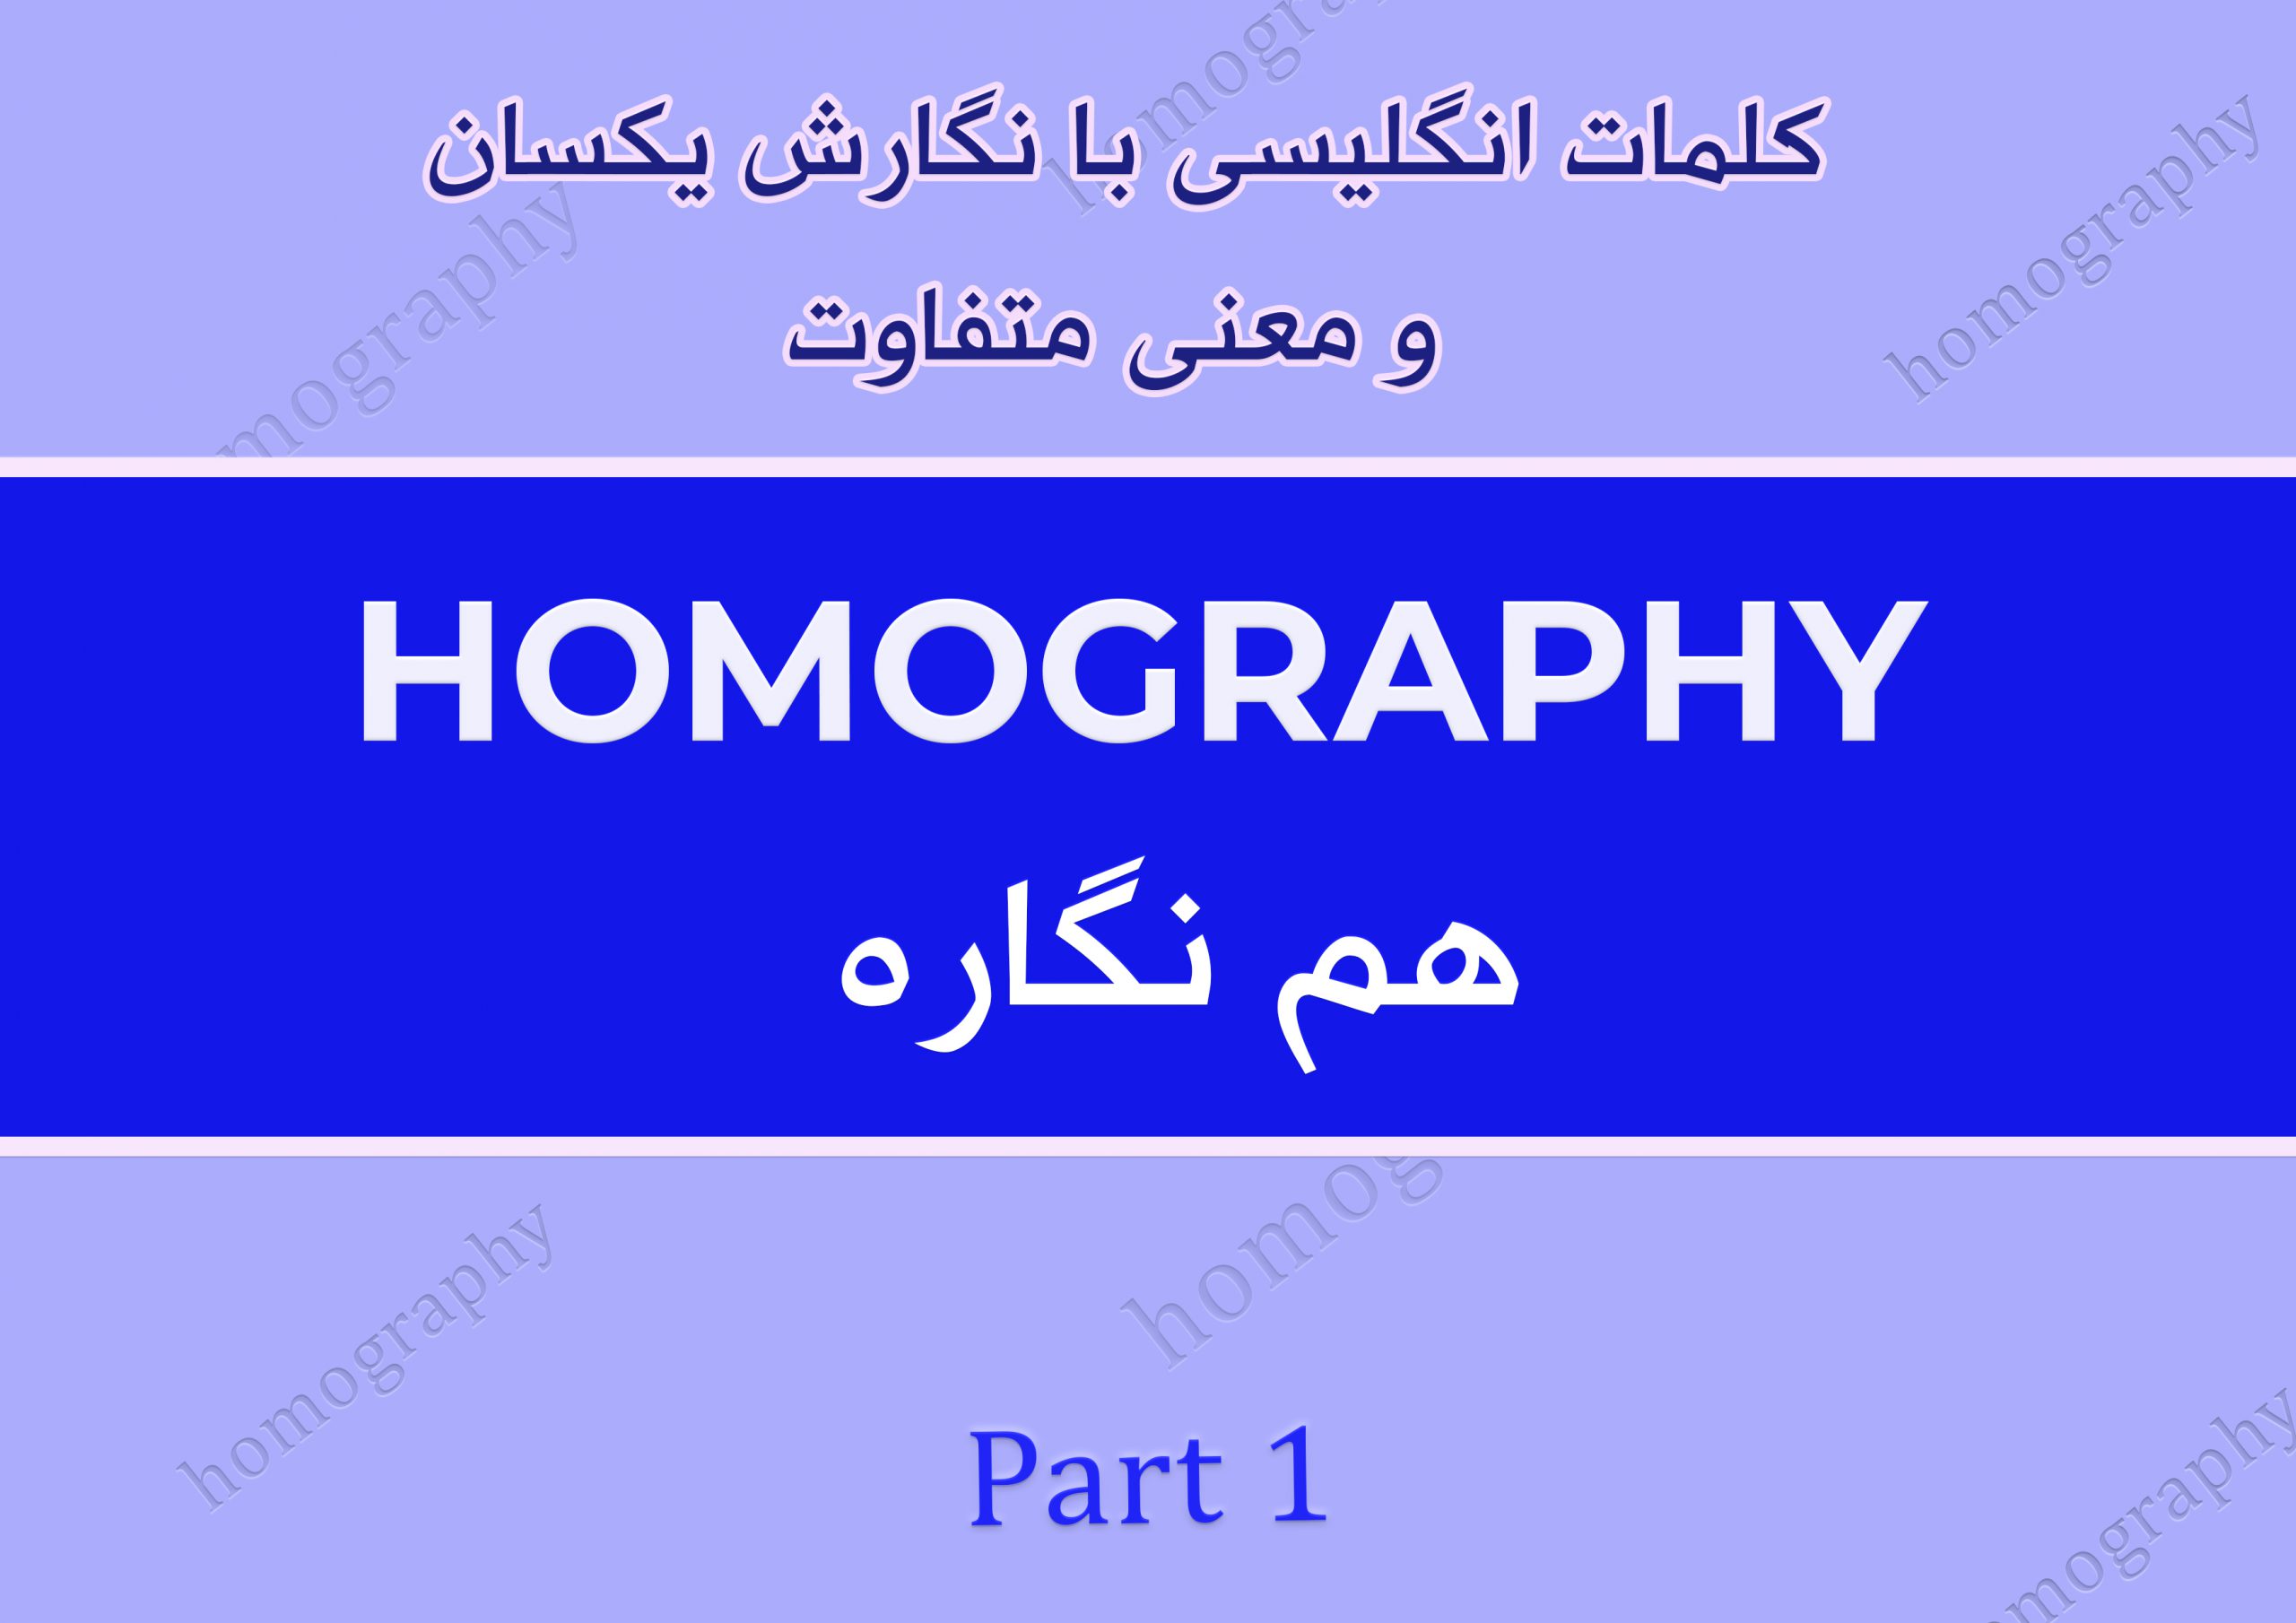 کلمات انگلیسی با نگارش یکسان و معنی متفاوت| Homograph | part 1 | معانی مختلف کلمه desert